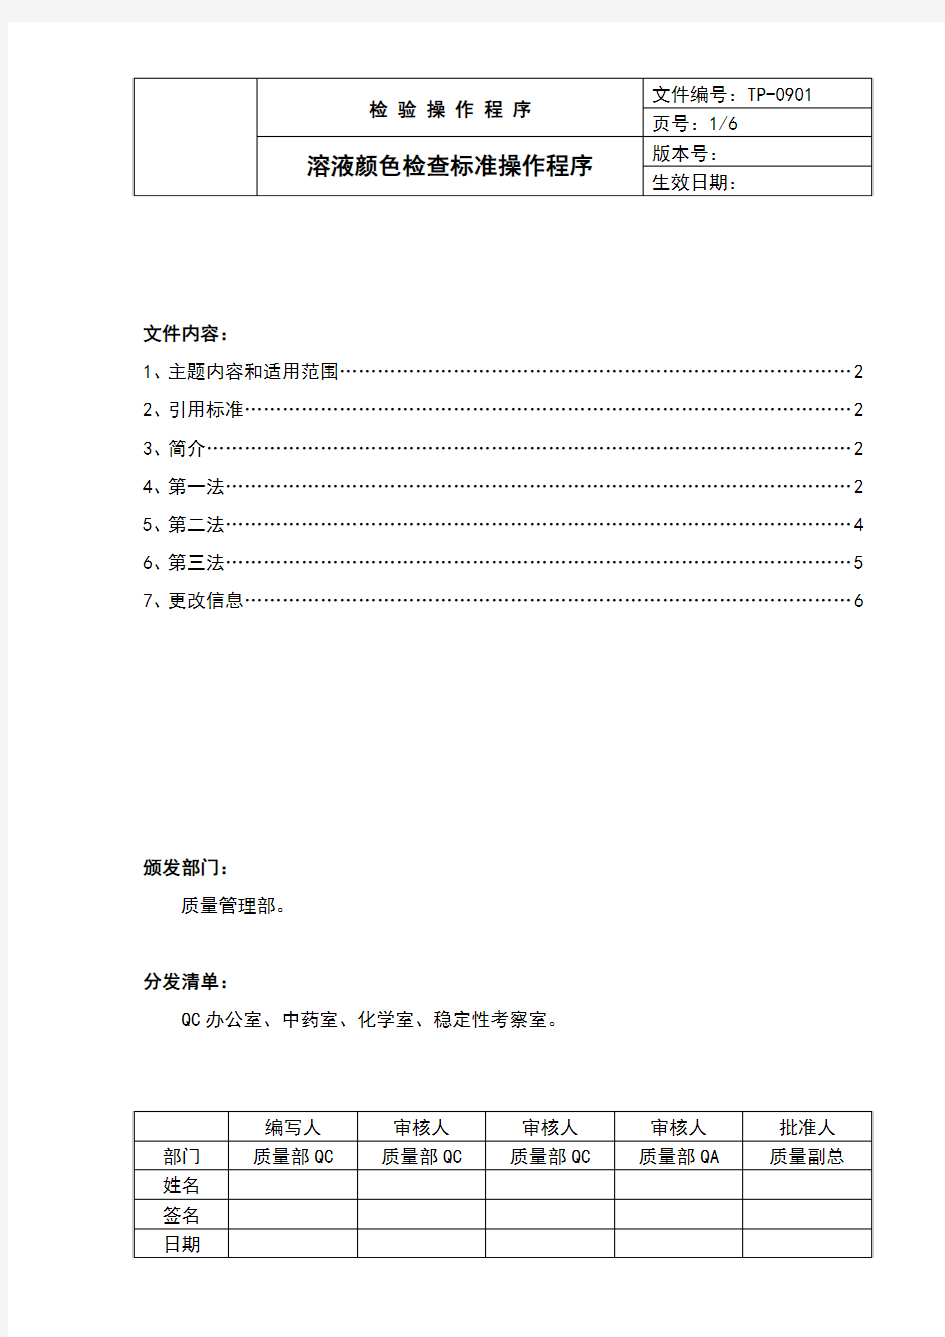 中国药品检验标准操作规范2010年版溶液颜色检查法